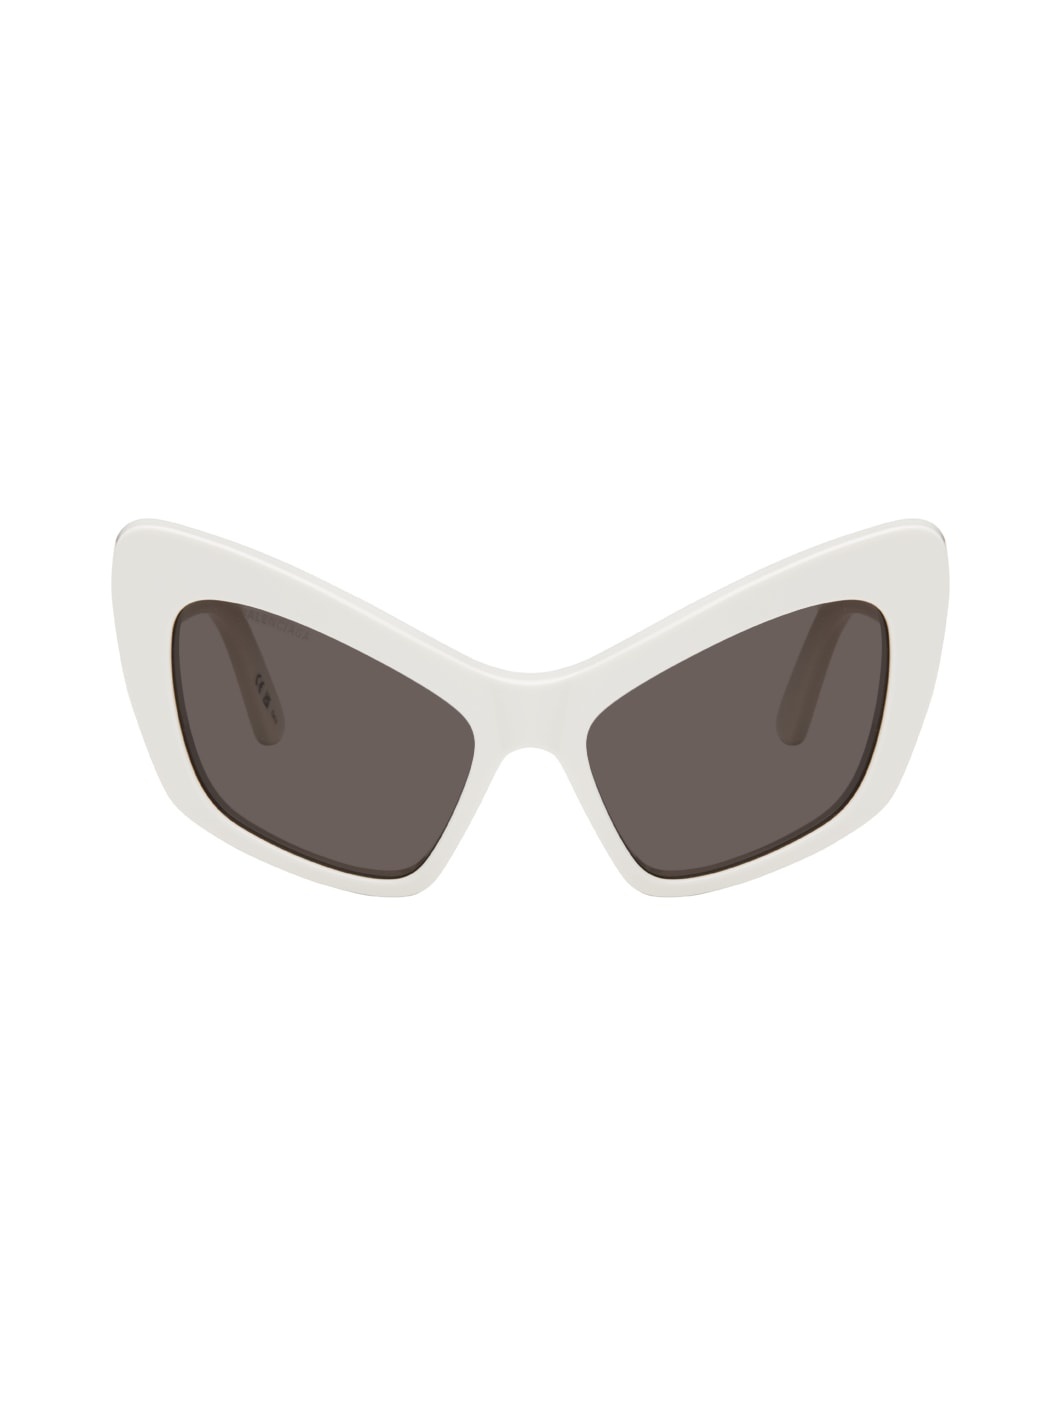 White Monaco Sunglasses - 1